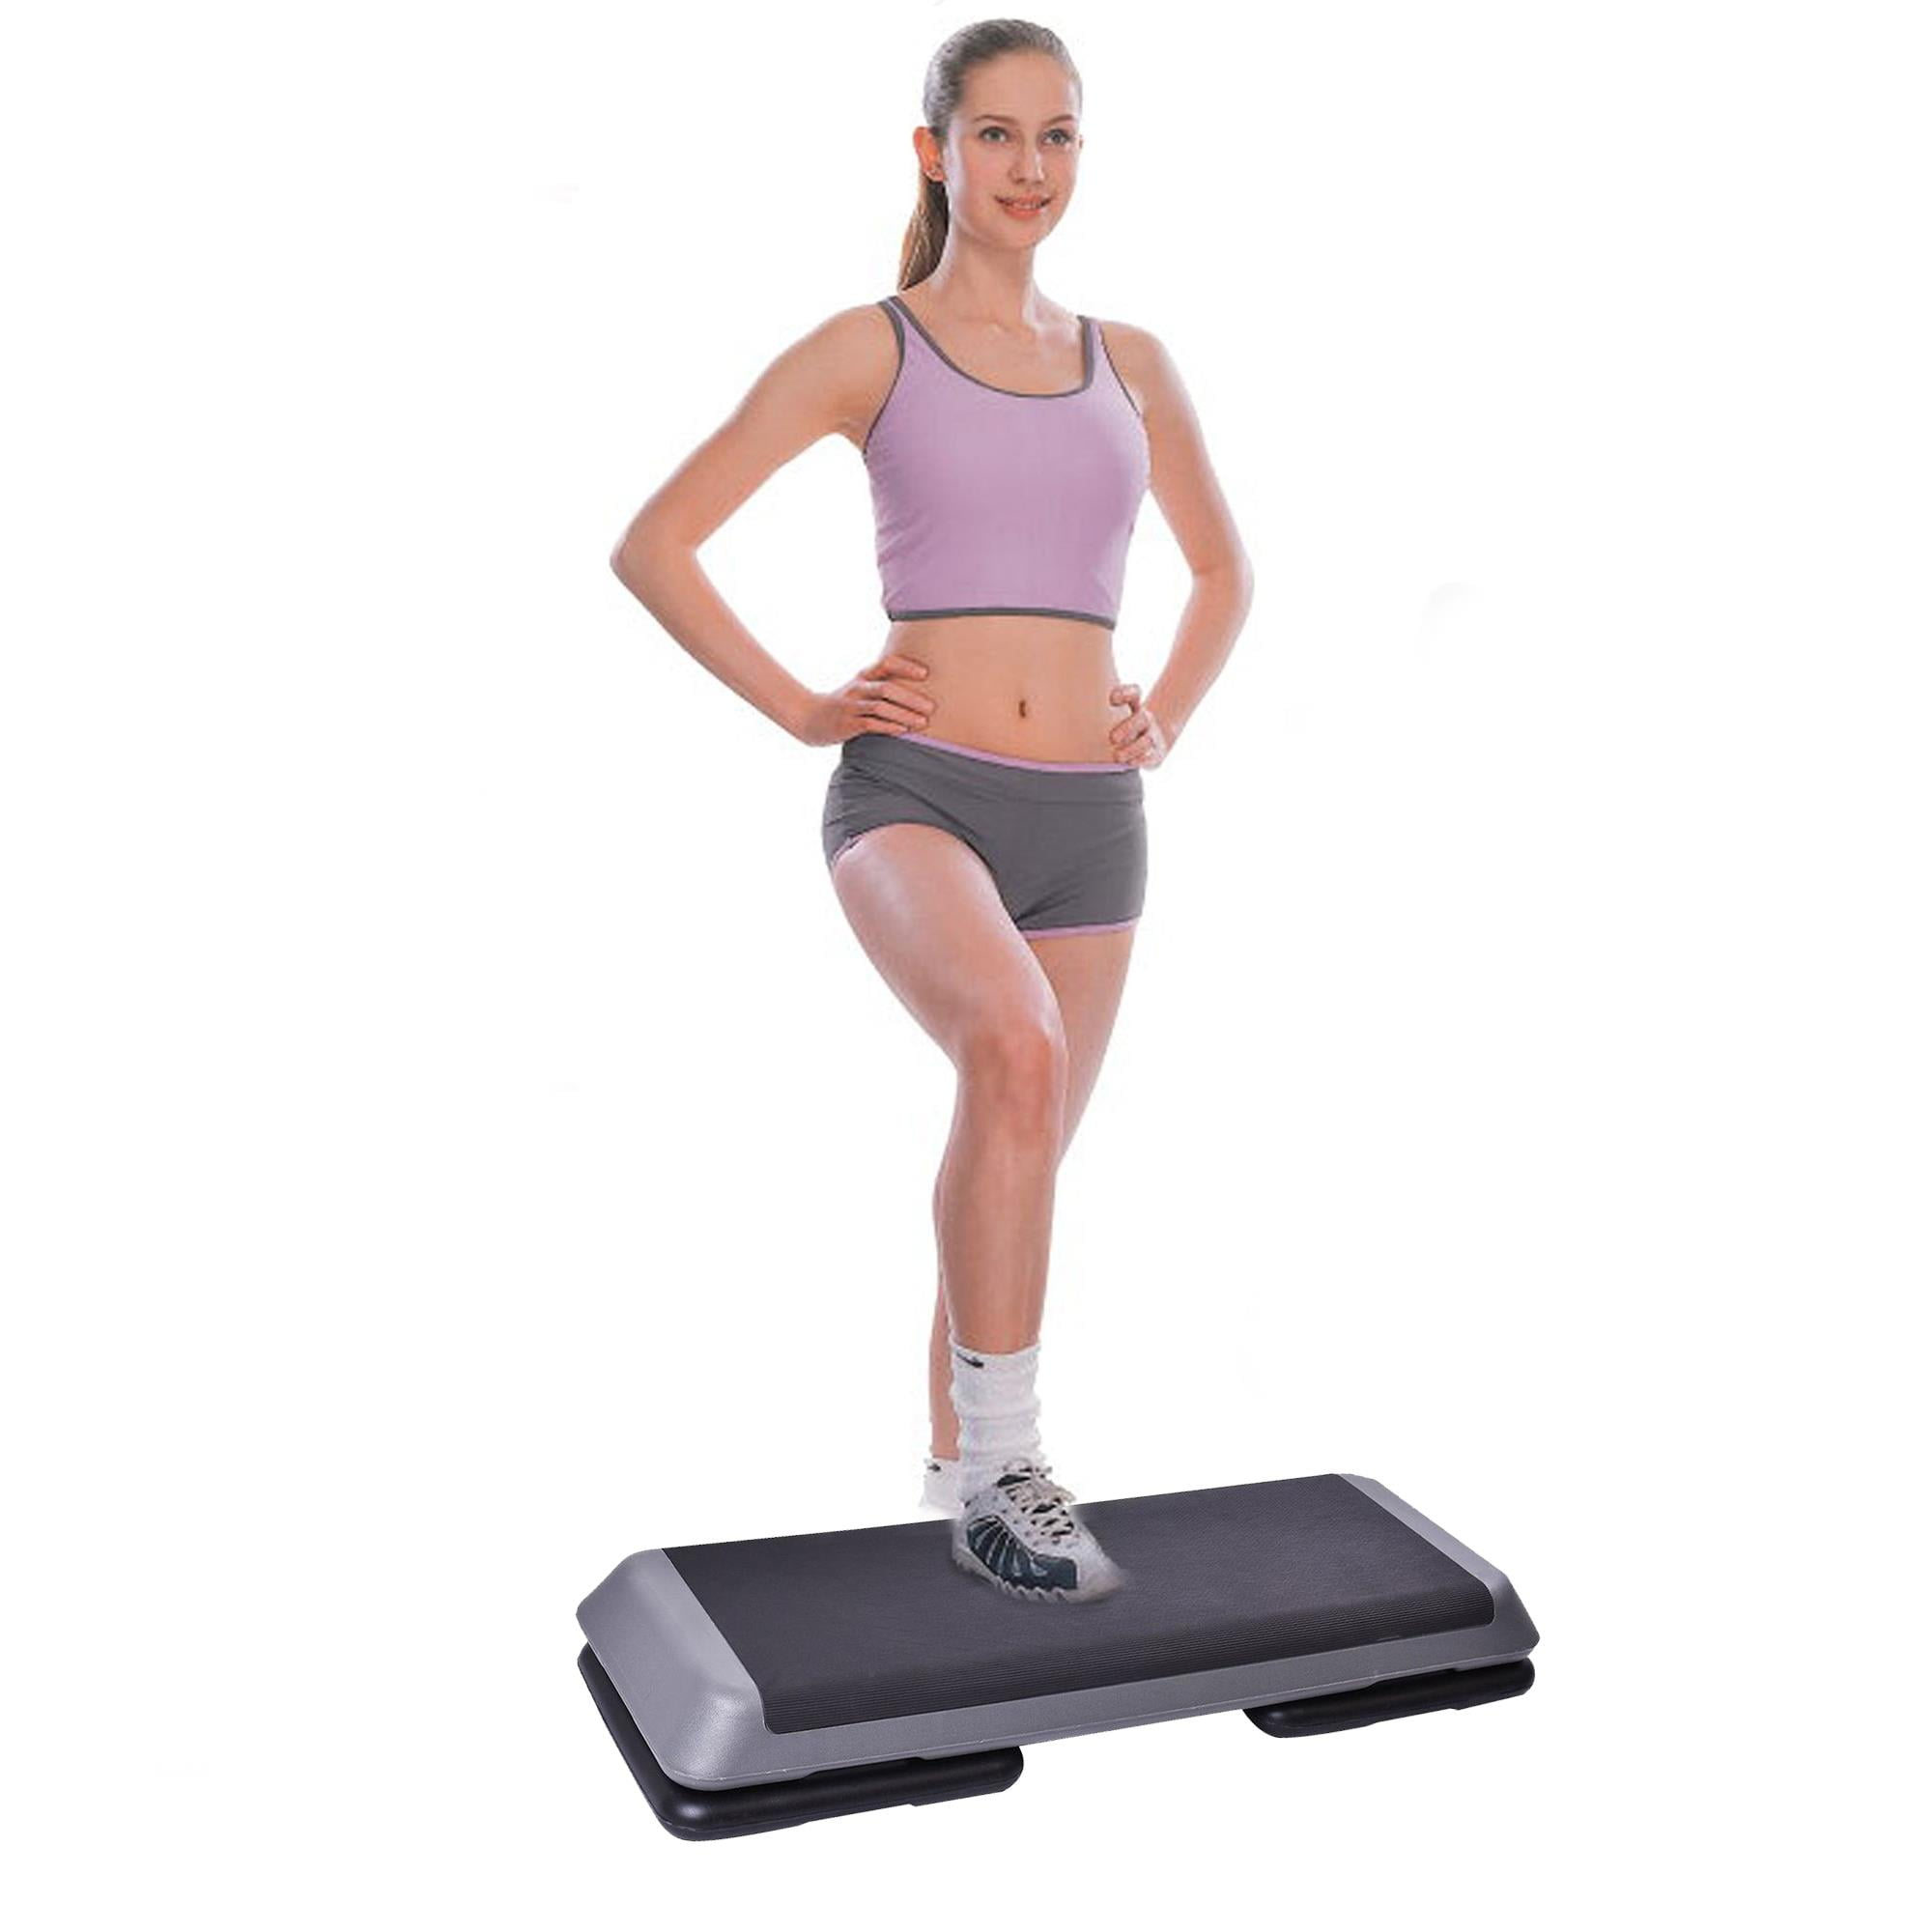 Aerobic Step Platform Steppers,the Step Original Aerobic Platform For Total Body Fitness